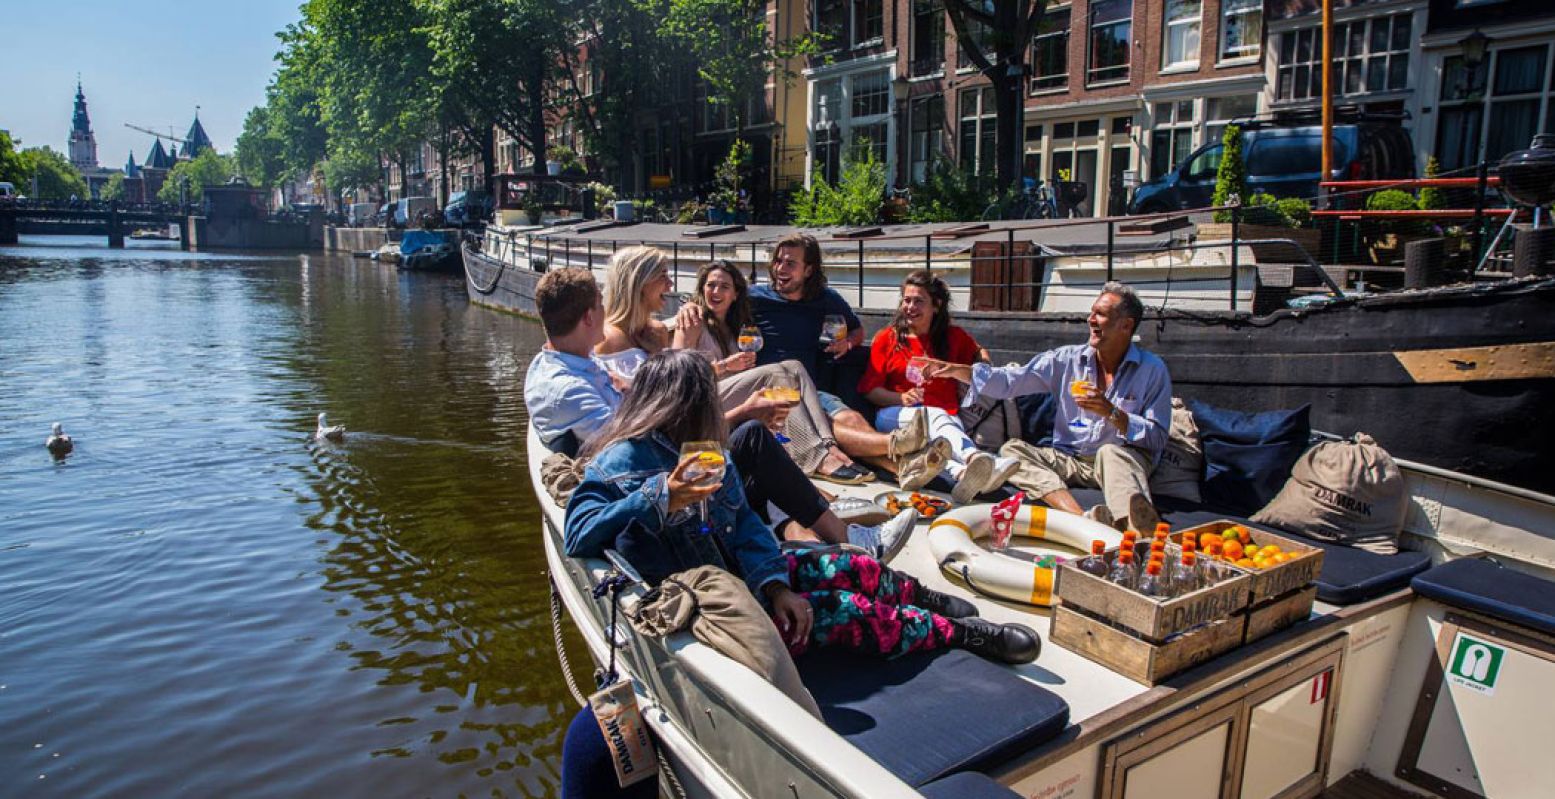 Met een bootje de gracht op, dat hoort natuurlijk bij je weekendje Amsterdam. Foto: Friendship Amsterdam